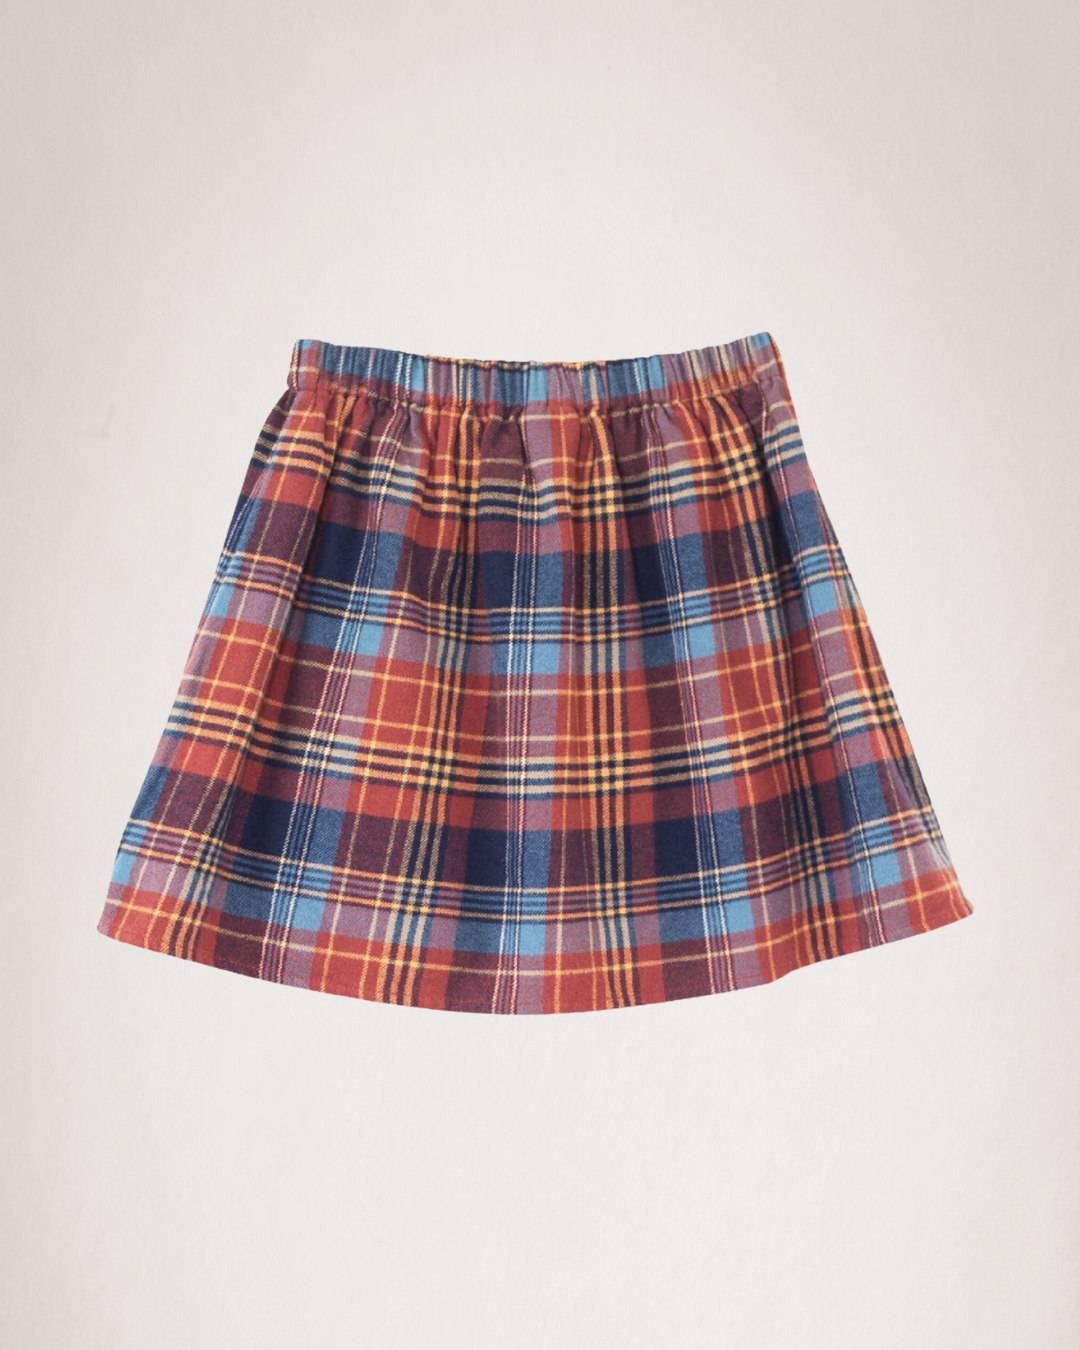 The Lottie Skirt.